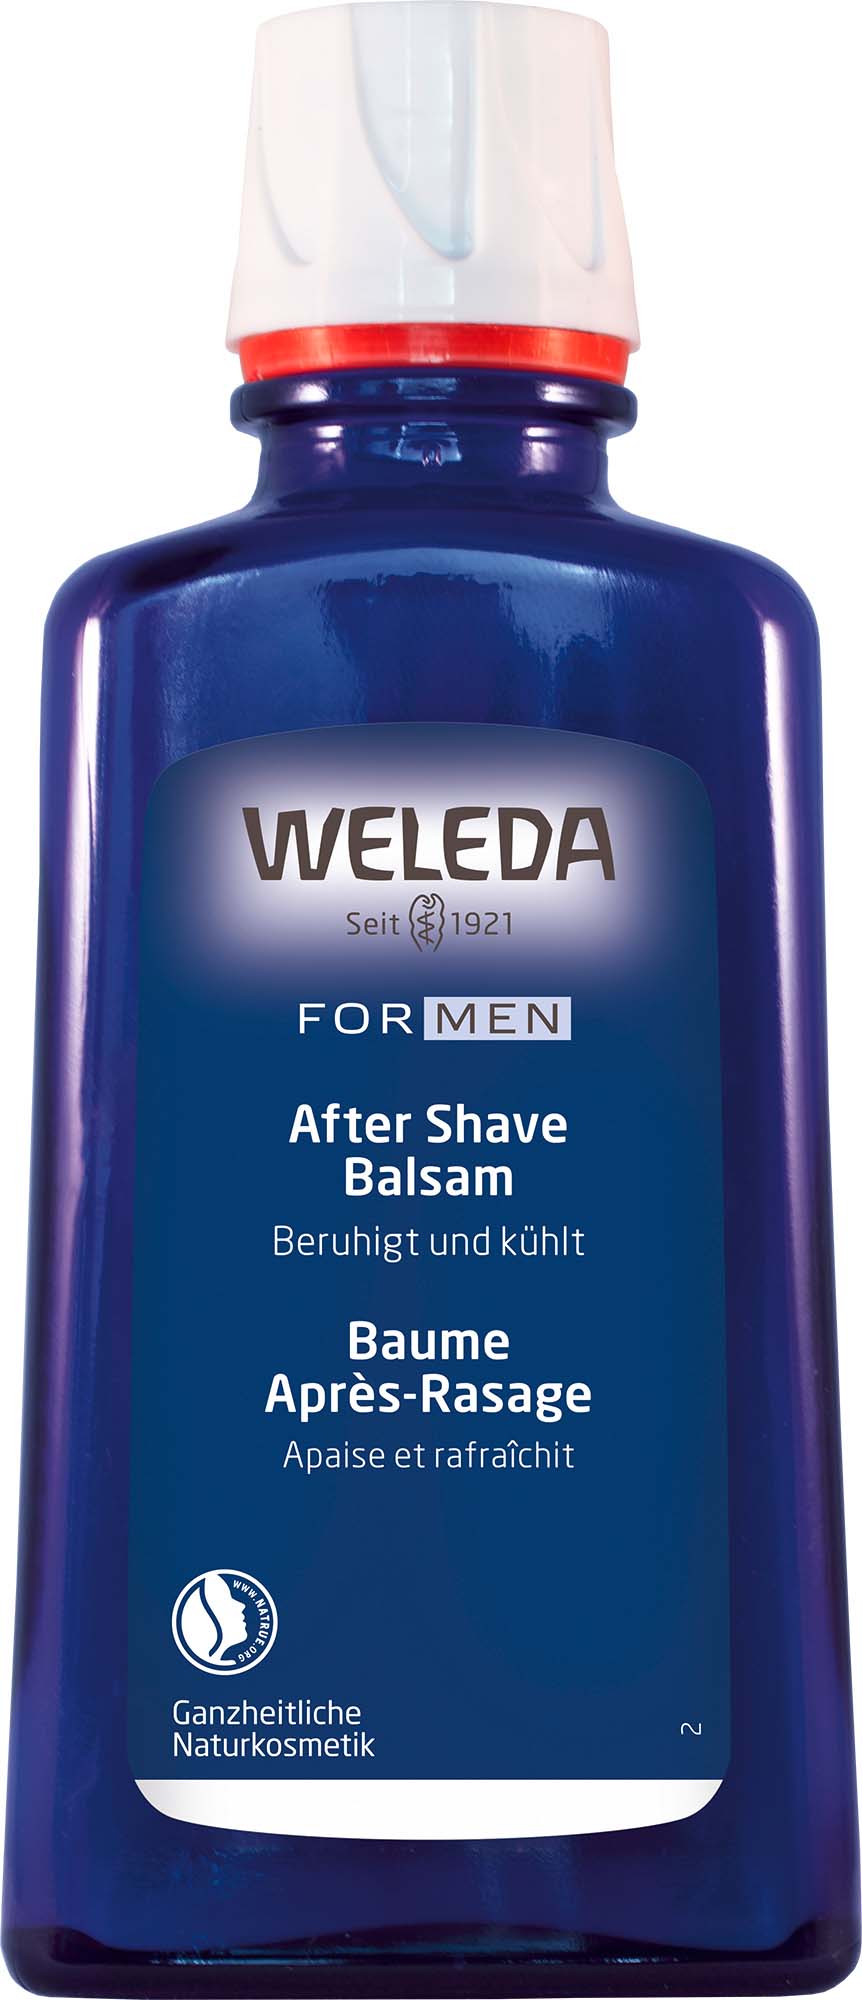 FOR MEN After Shave Balsam